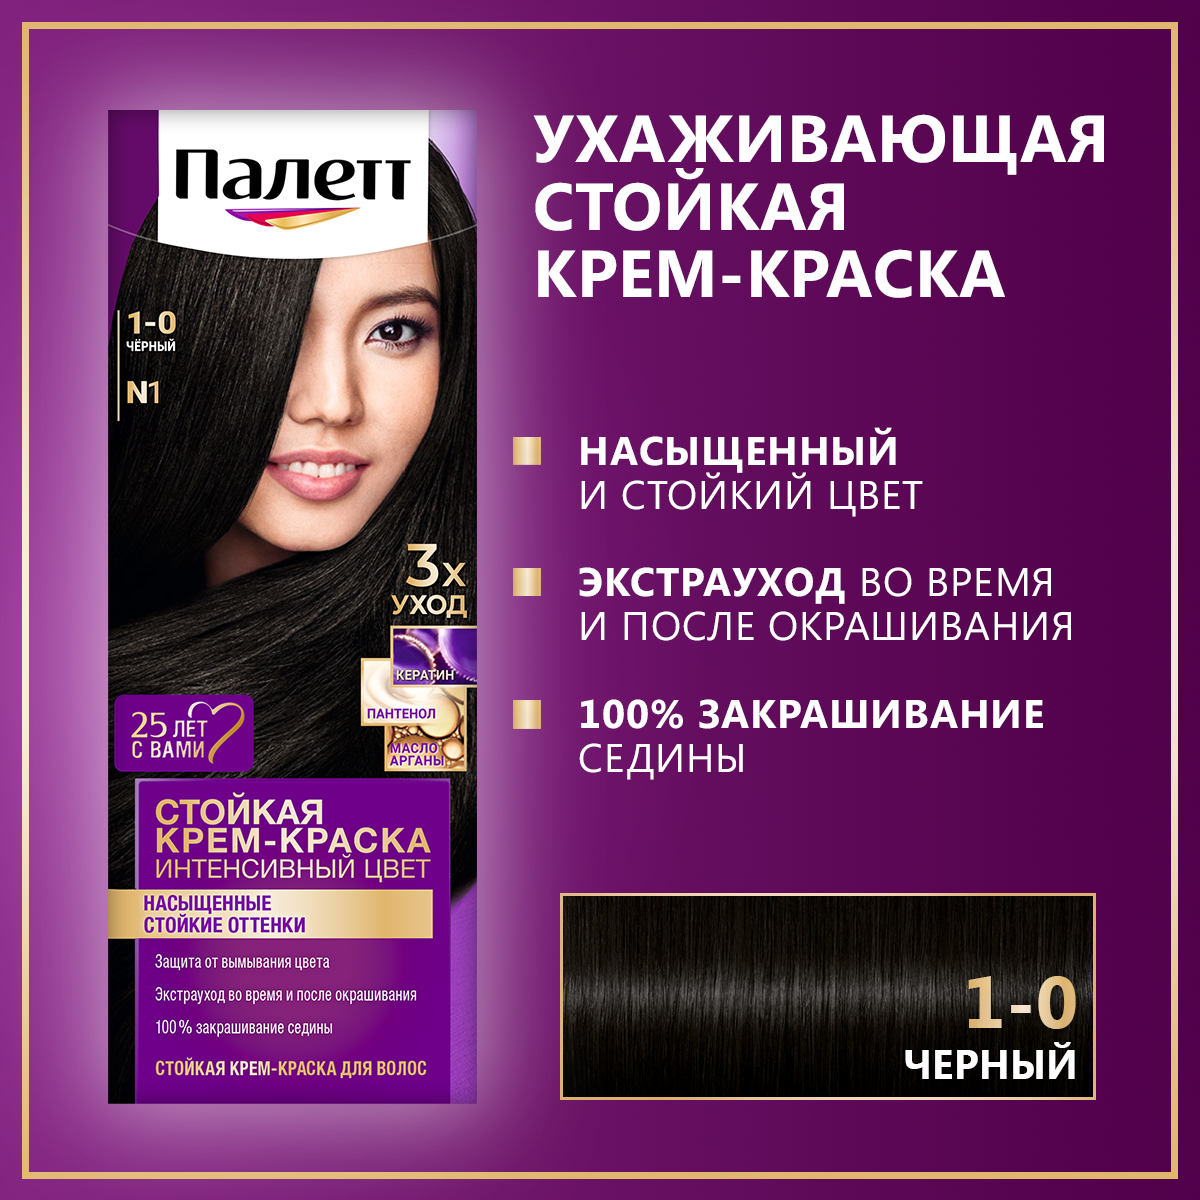 Стойкая крем-краска для волос Палетт Интенсивный цвет 1-0 (N1) Чёрный, 110 мл краска j maki 12 77 суперблонд интенсивный фиолетовый 60 мл